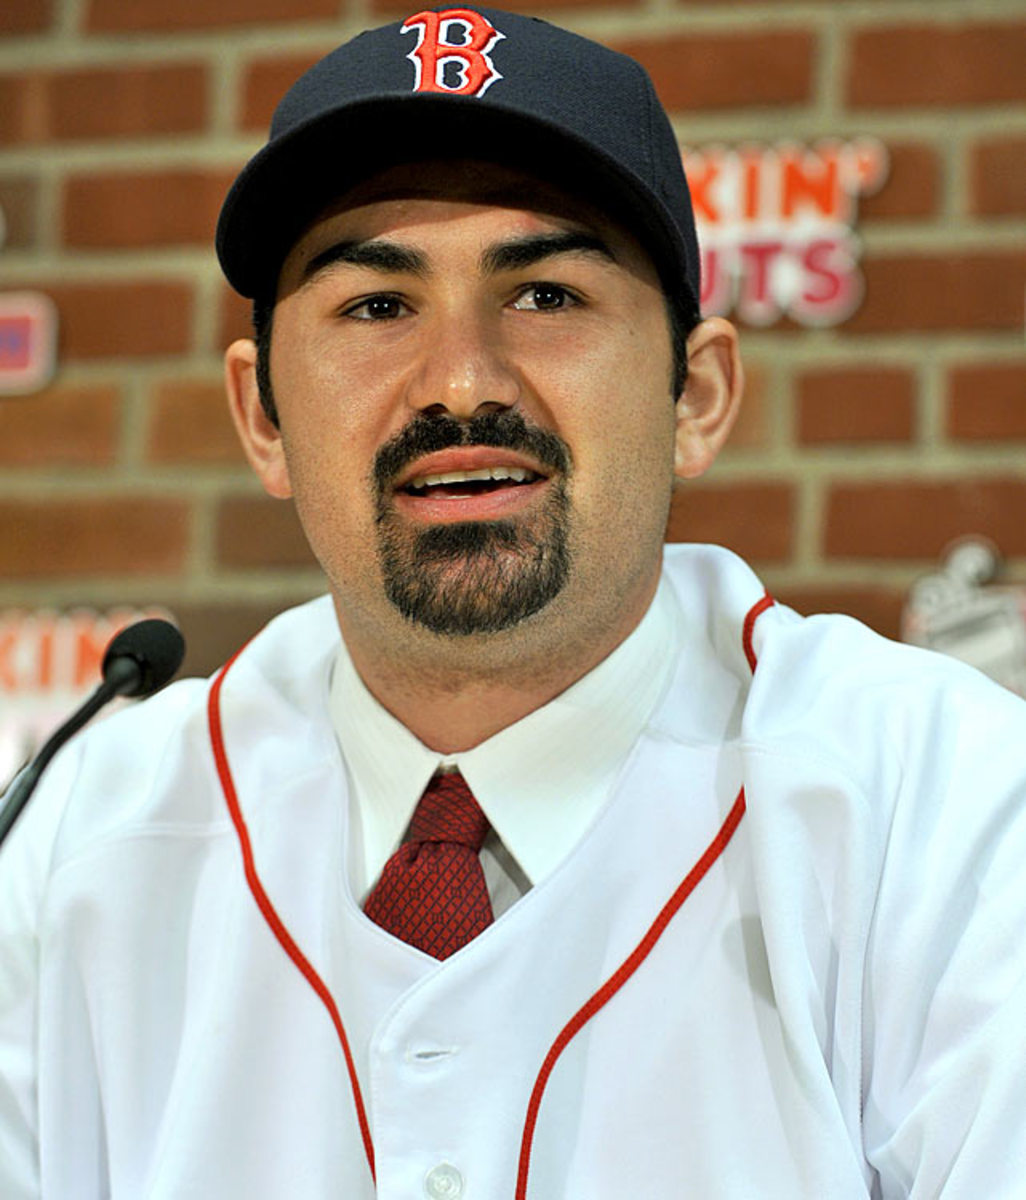 Adrian Gonzalez